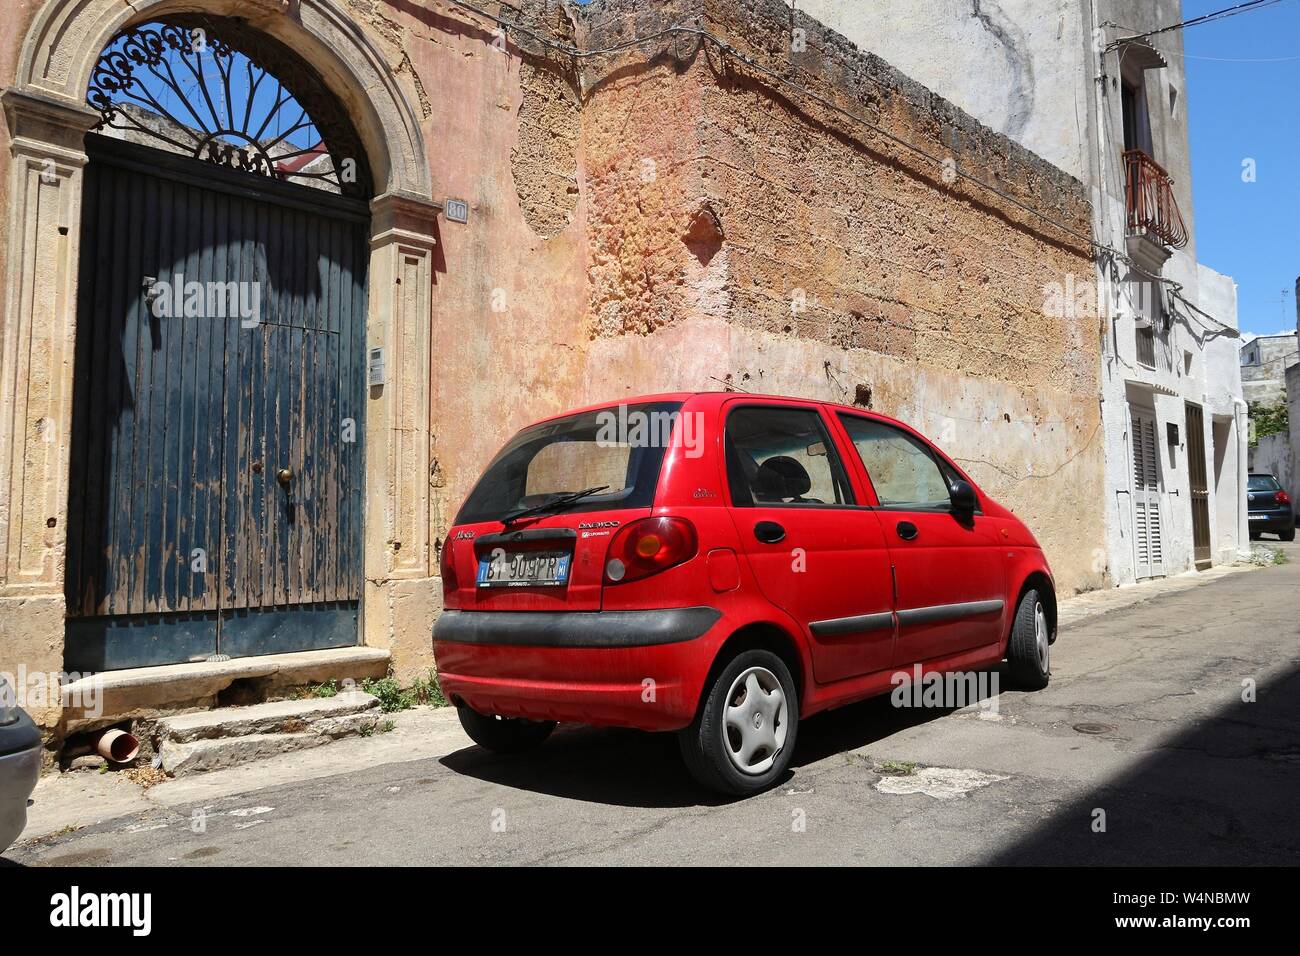 NARDO, ITALY - MAY 30, 2017: Daewoo Matiz mini city car parked in a street in Nardo, Italy. There are 41 million motor vehicles registered in Italy. Stock Photo